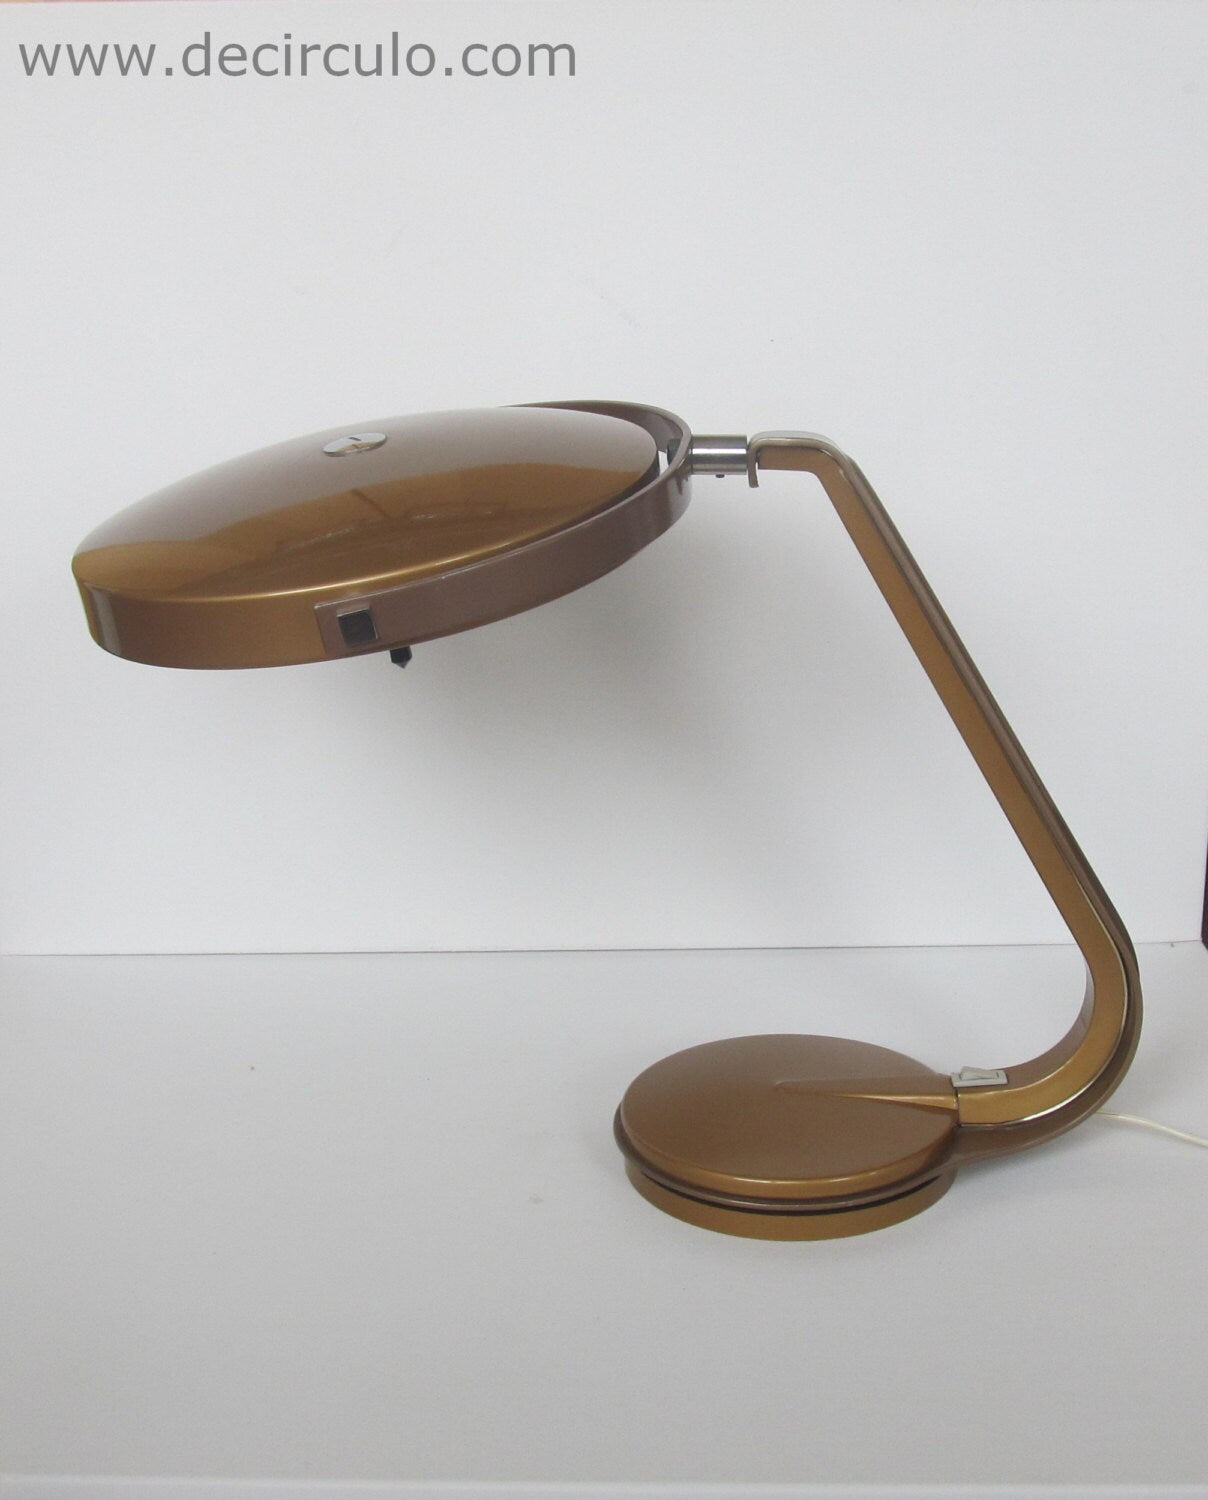 Lámpara de diseño español Lupela, preciosa lámpara de diseño vintage de los años 60 similar a las lámparas fase